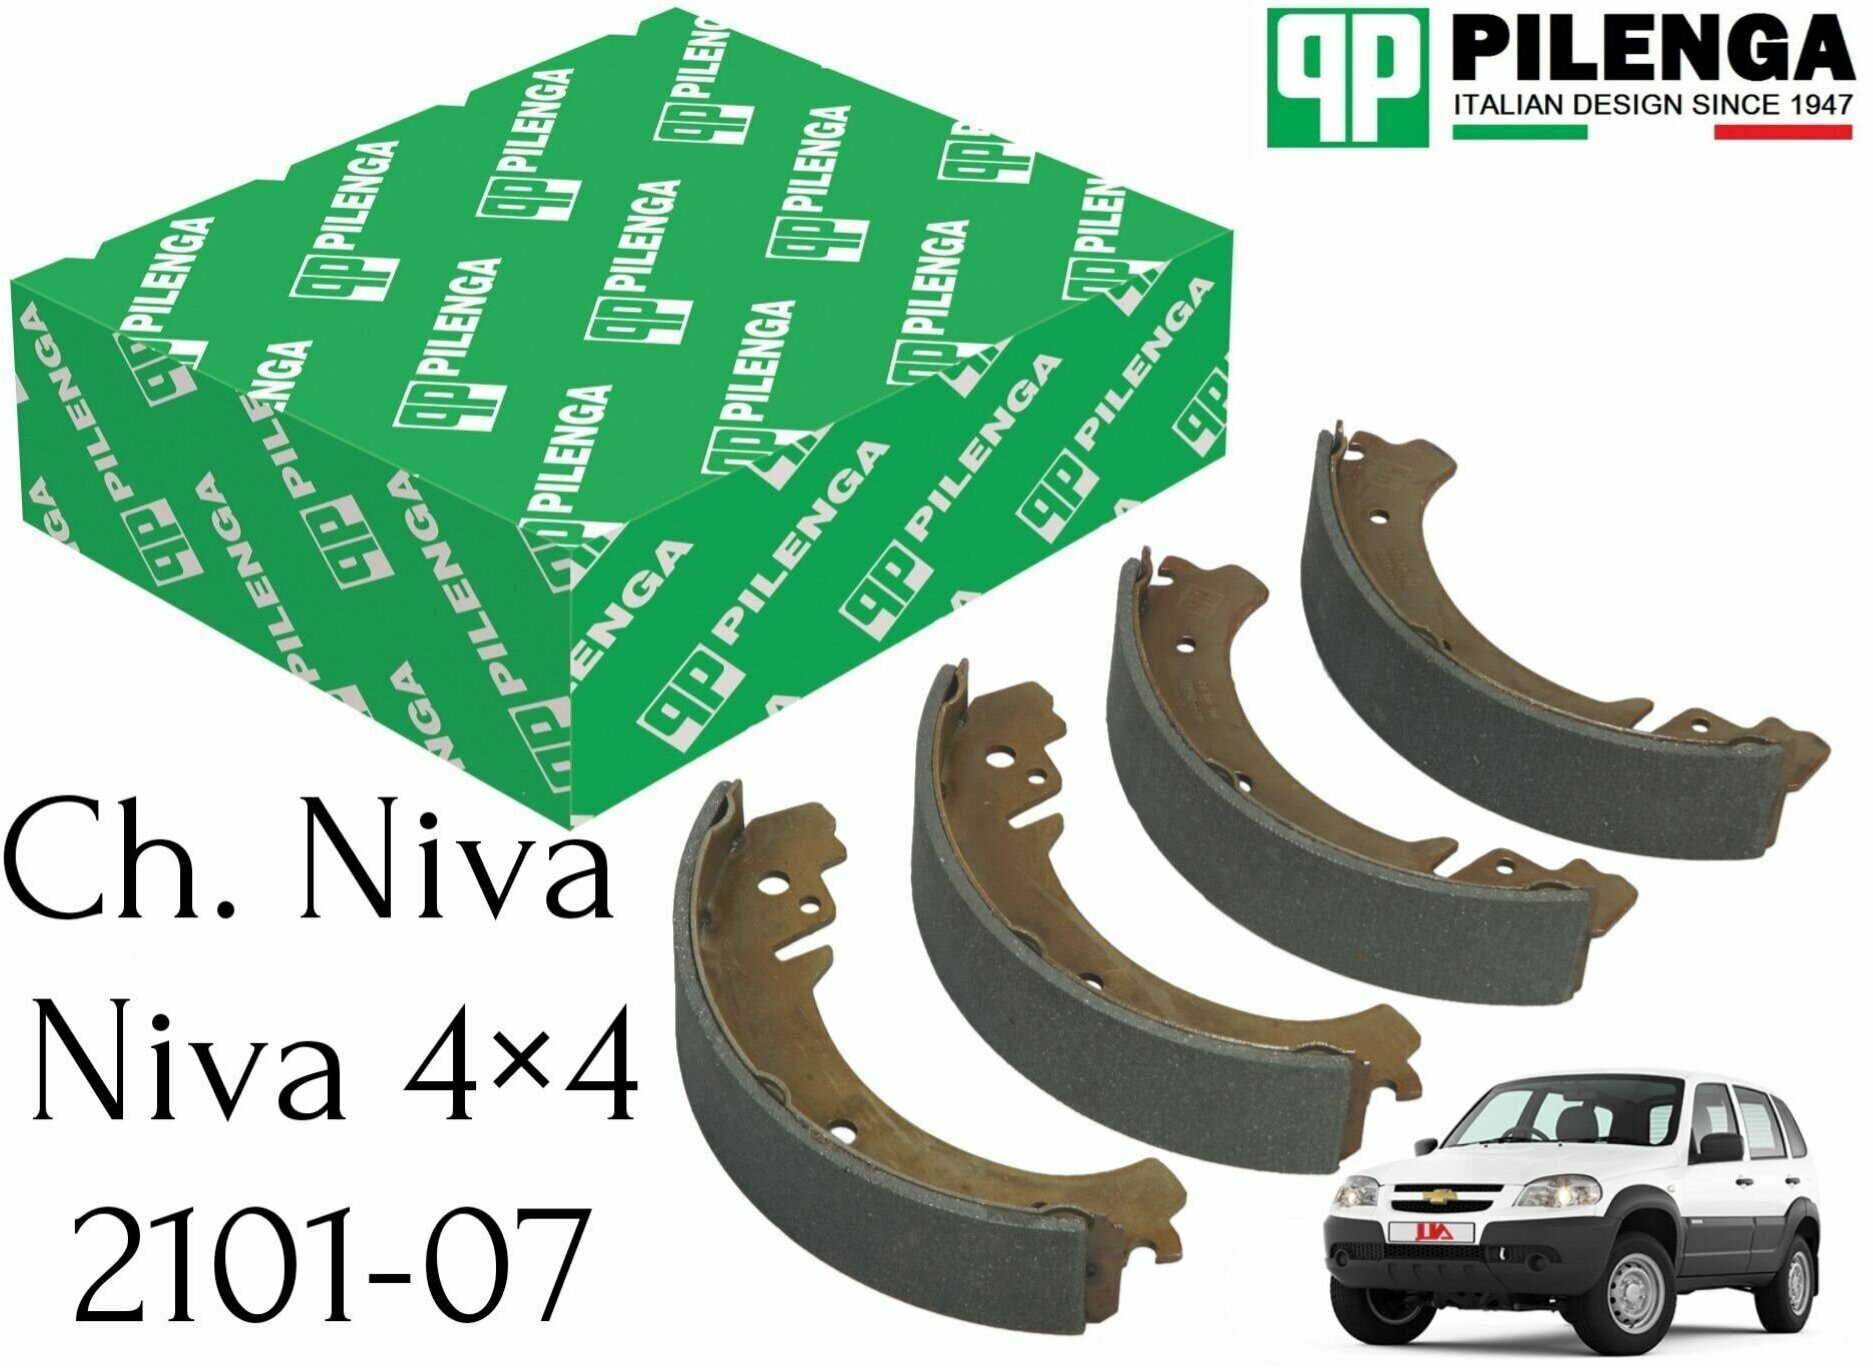 Тормозные колодки задние Pilenga для Chevrolet Niva, Нива 2121-214, классика 2101-2107